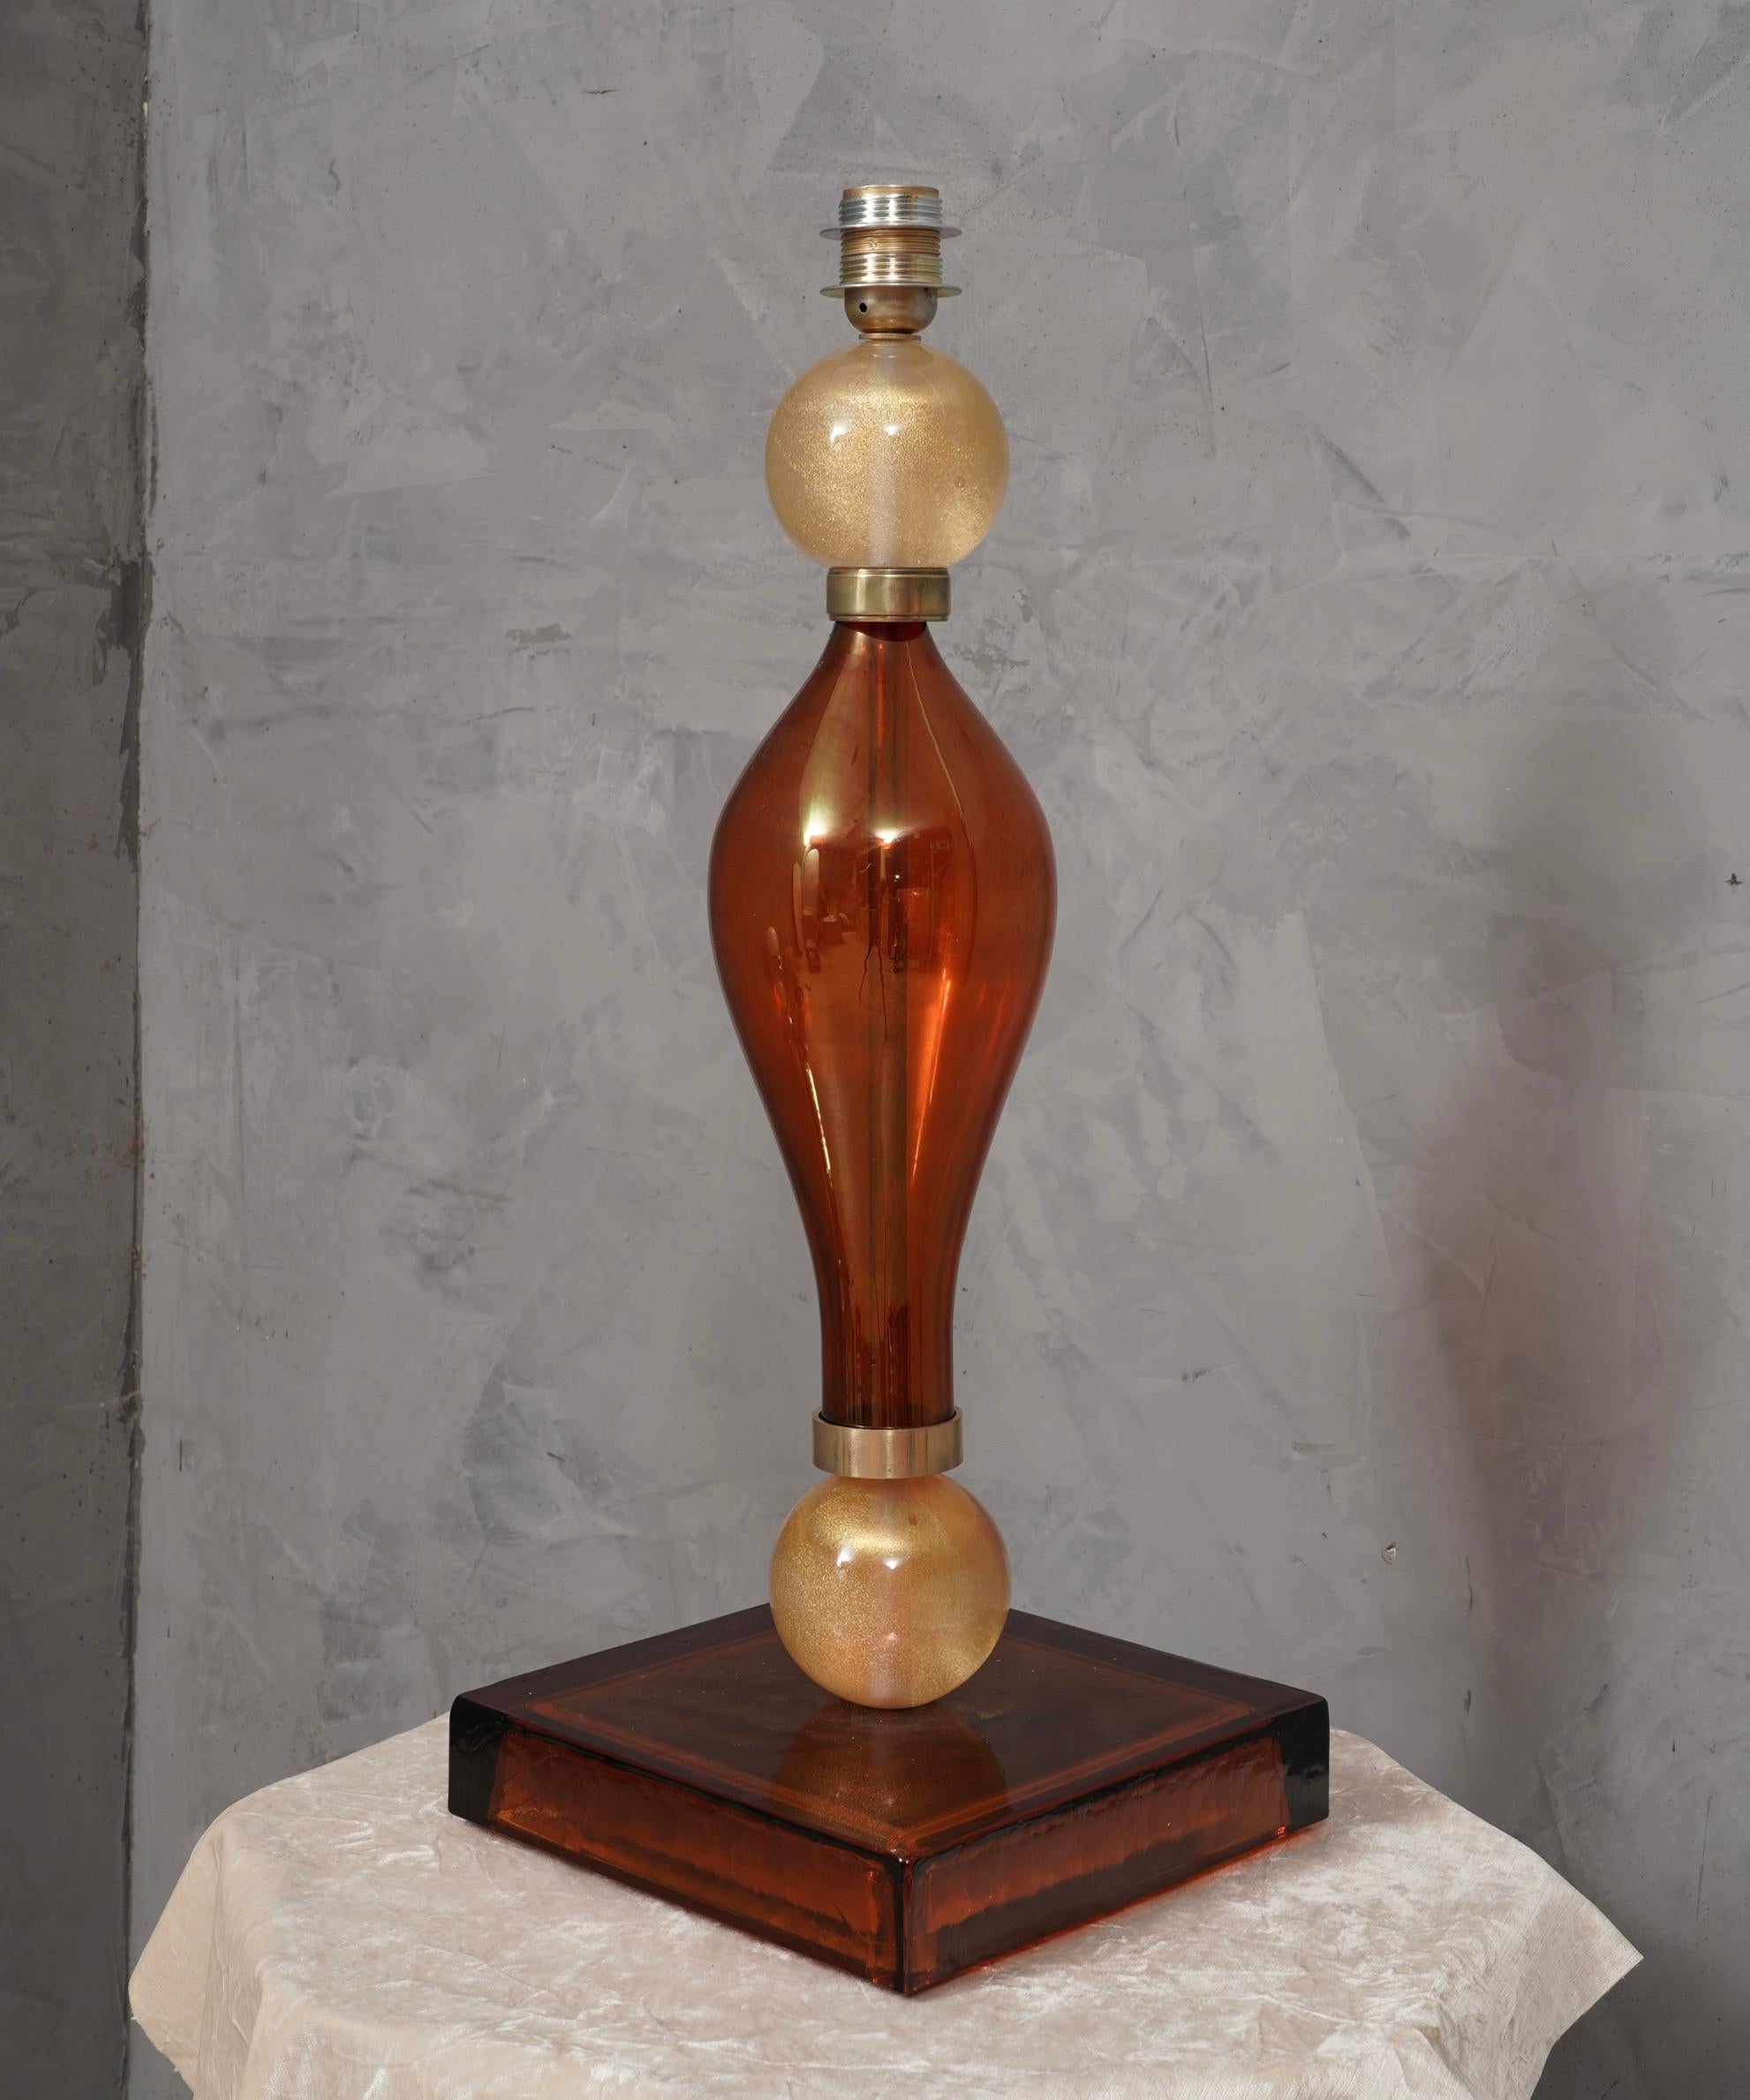 Incroyable beauté pour une lampe de table en verre ambré de Murano du milieu du siècle, élégante et d'une couleur très intense.

La lampe de table est entièrement réalisée en verre soufflé de Murano, de couleur ambre et or. Elle est composée d'un